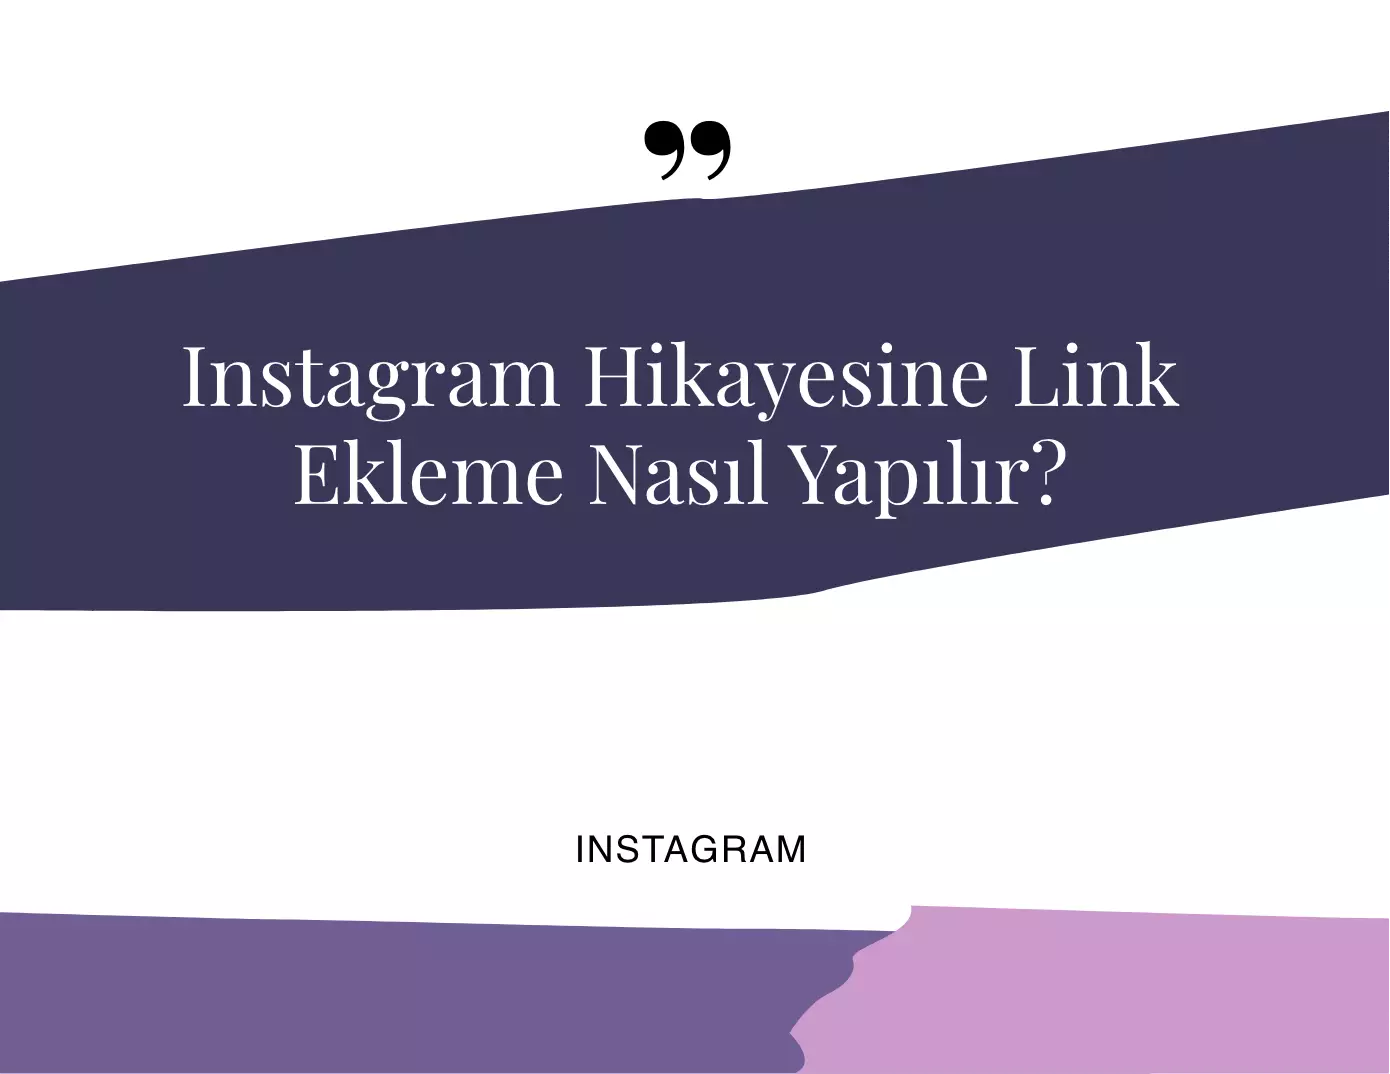 Instagram Hikayesine Link Ekleme Nasıl Yapılır?